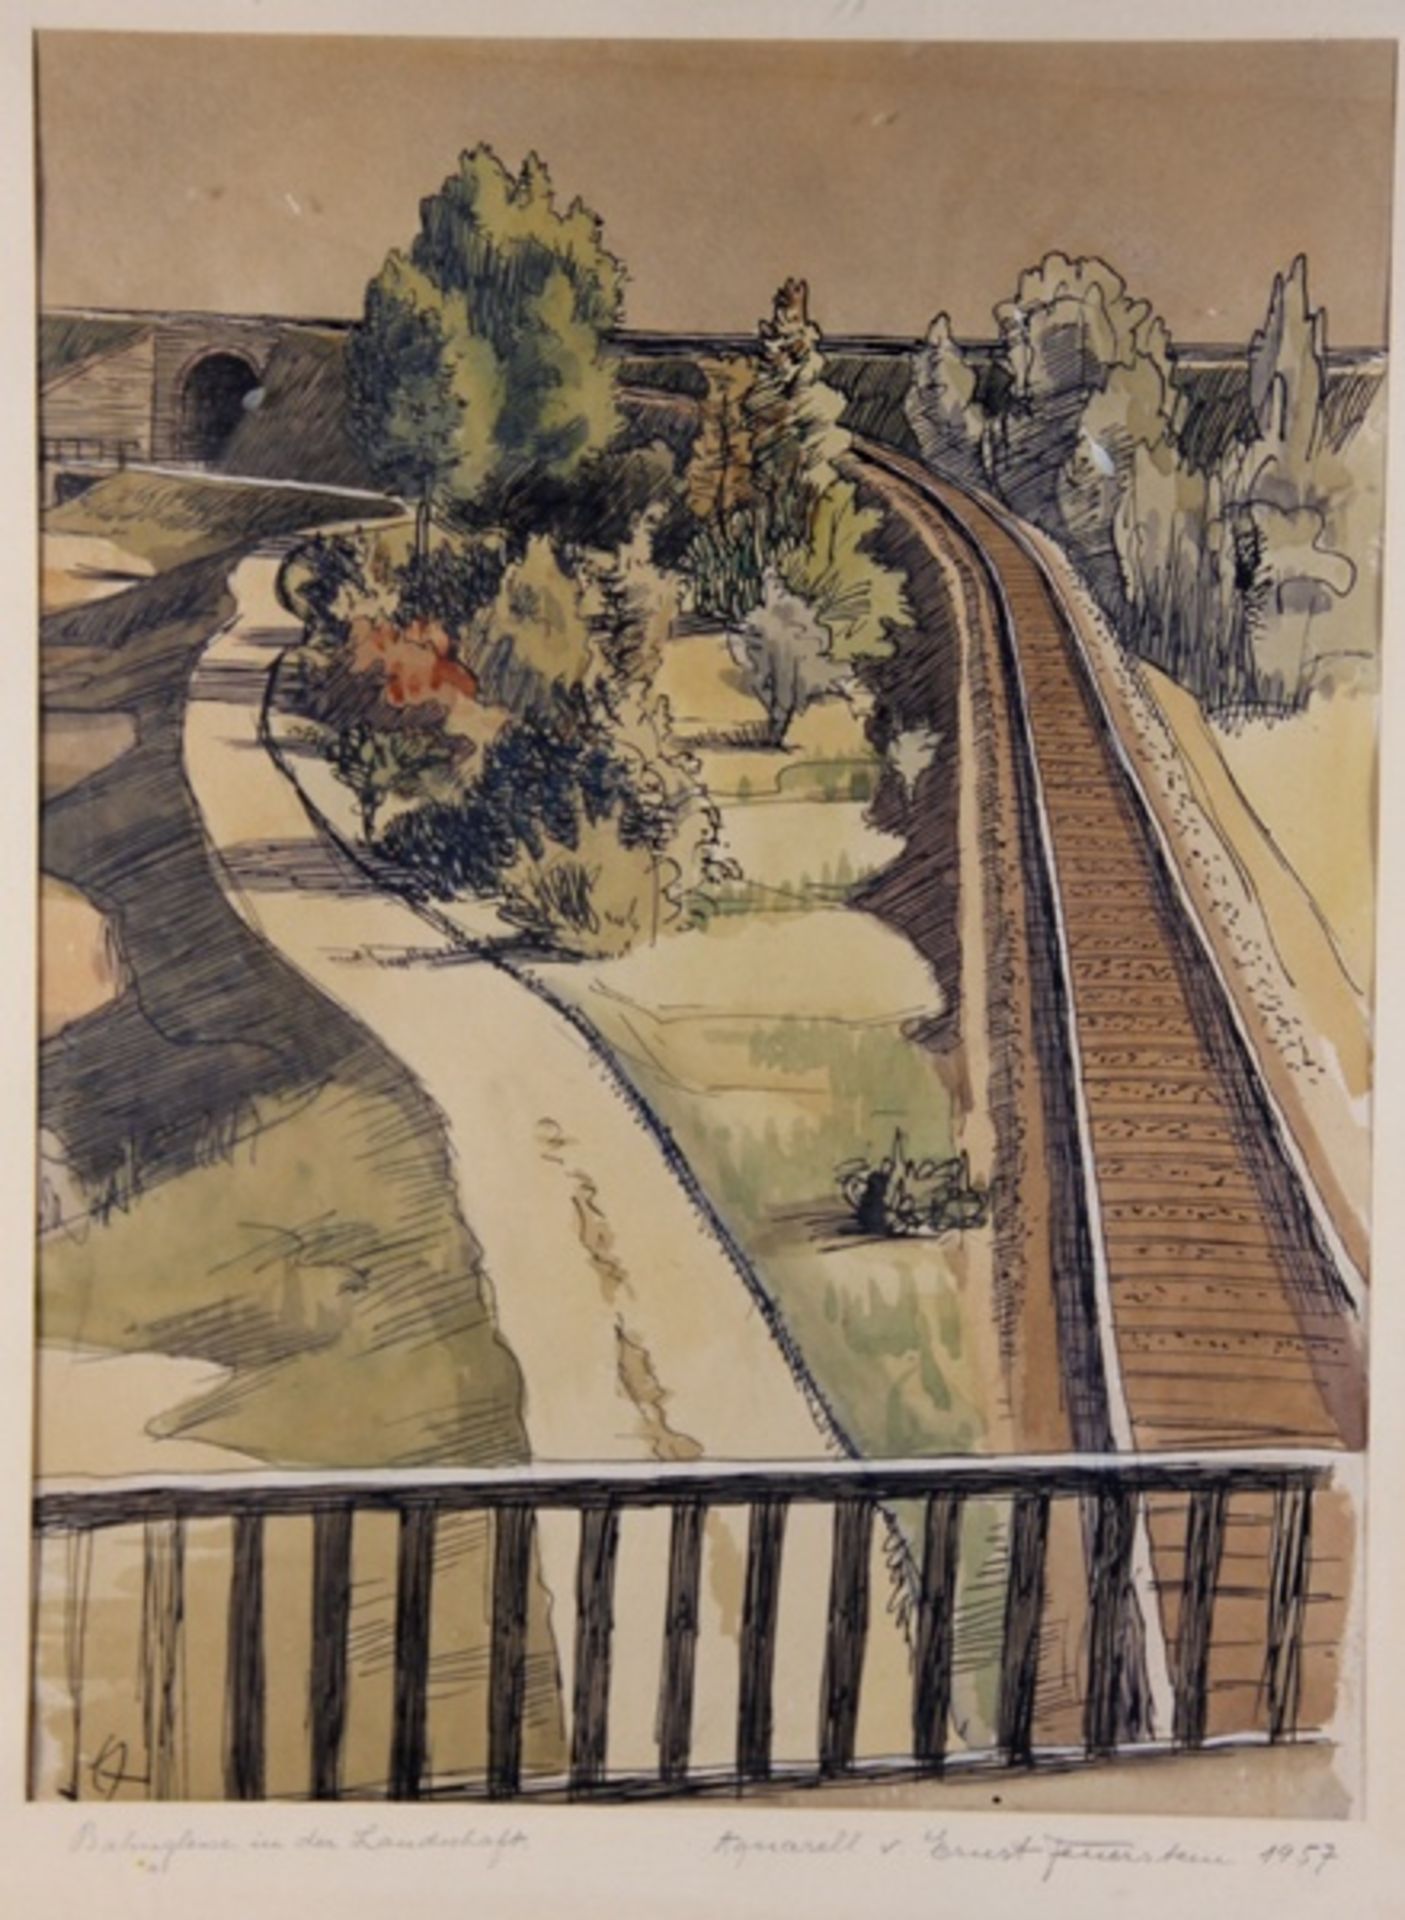 Feuerstein, Ernst1903-1960, Aquarell mit Tuschezeichnung, Bahngleise in der Landschaft, Blick von